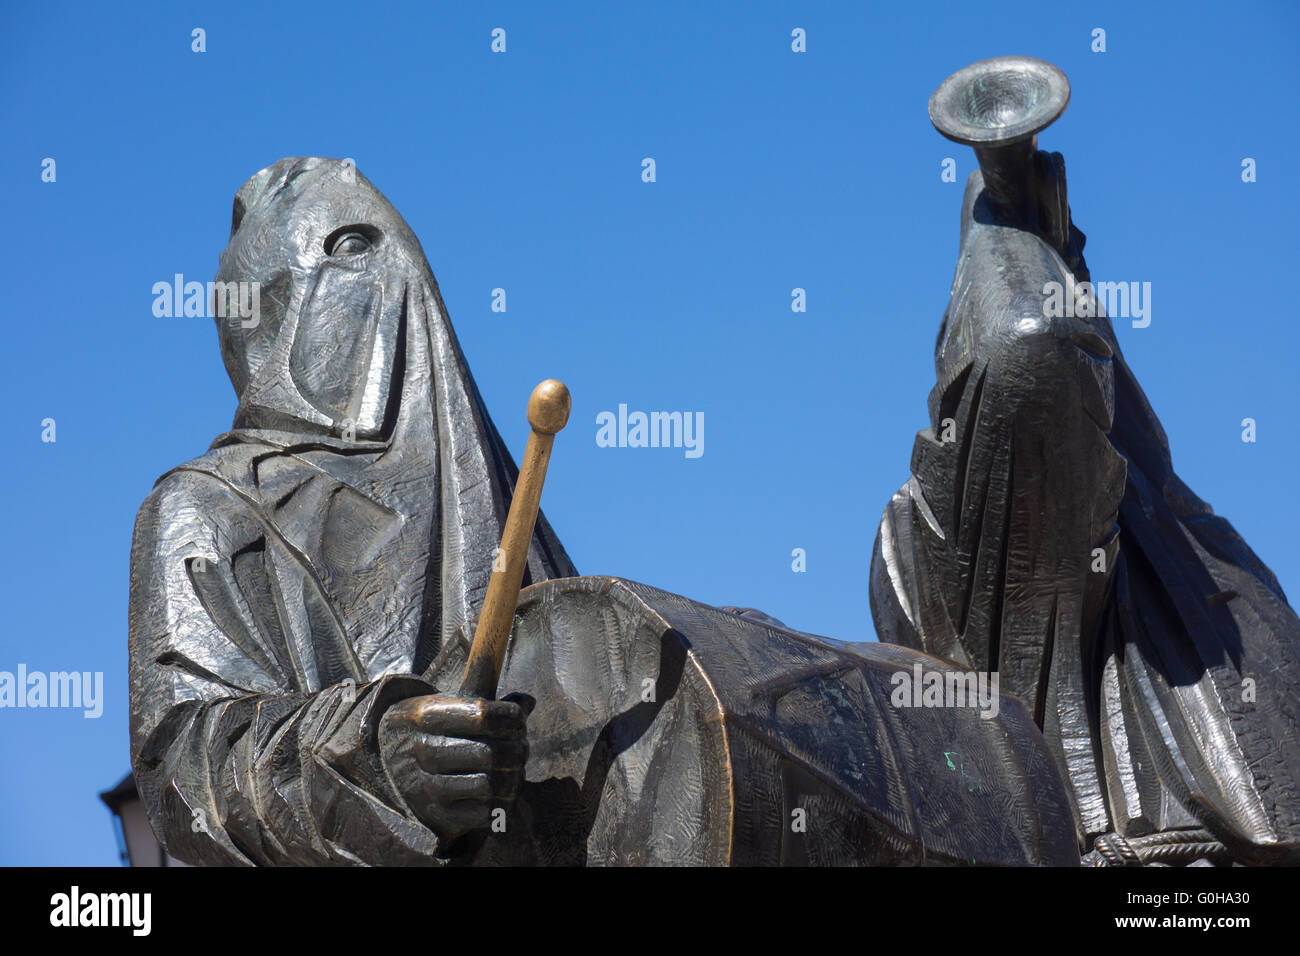 El Merlu statue in Zamora. Stock Photo